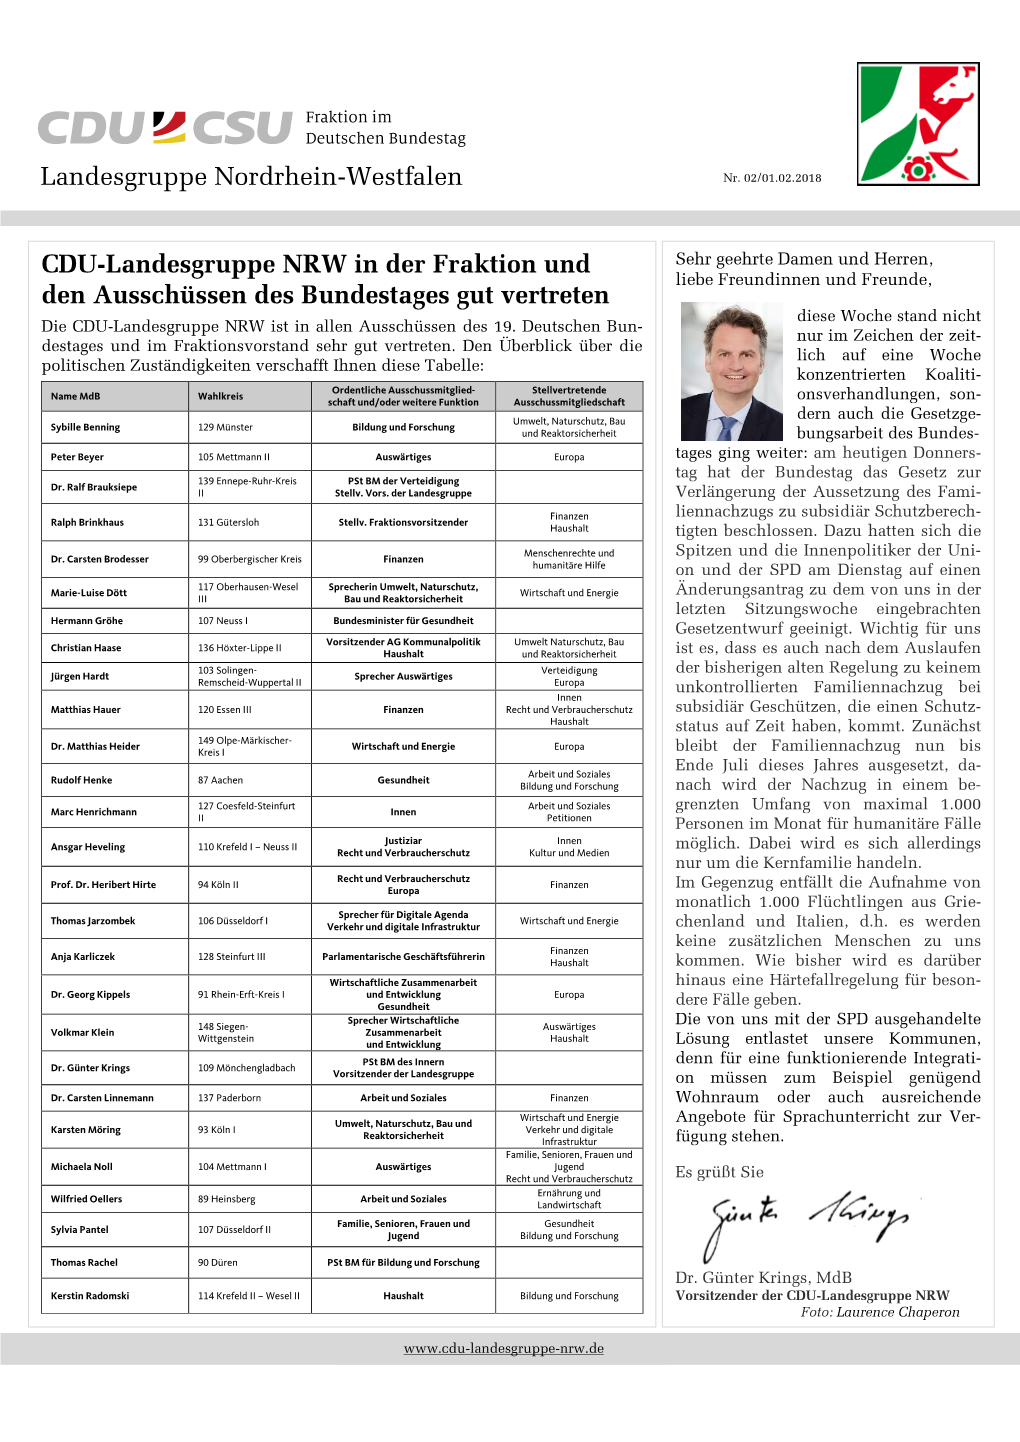 Newsletter CDU-Landesgruppe NRW Vom 1